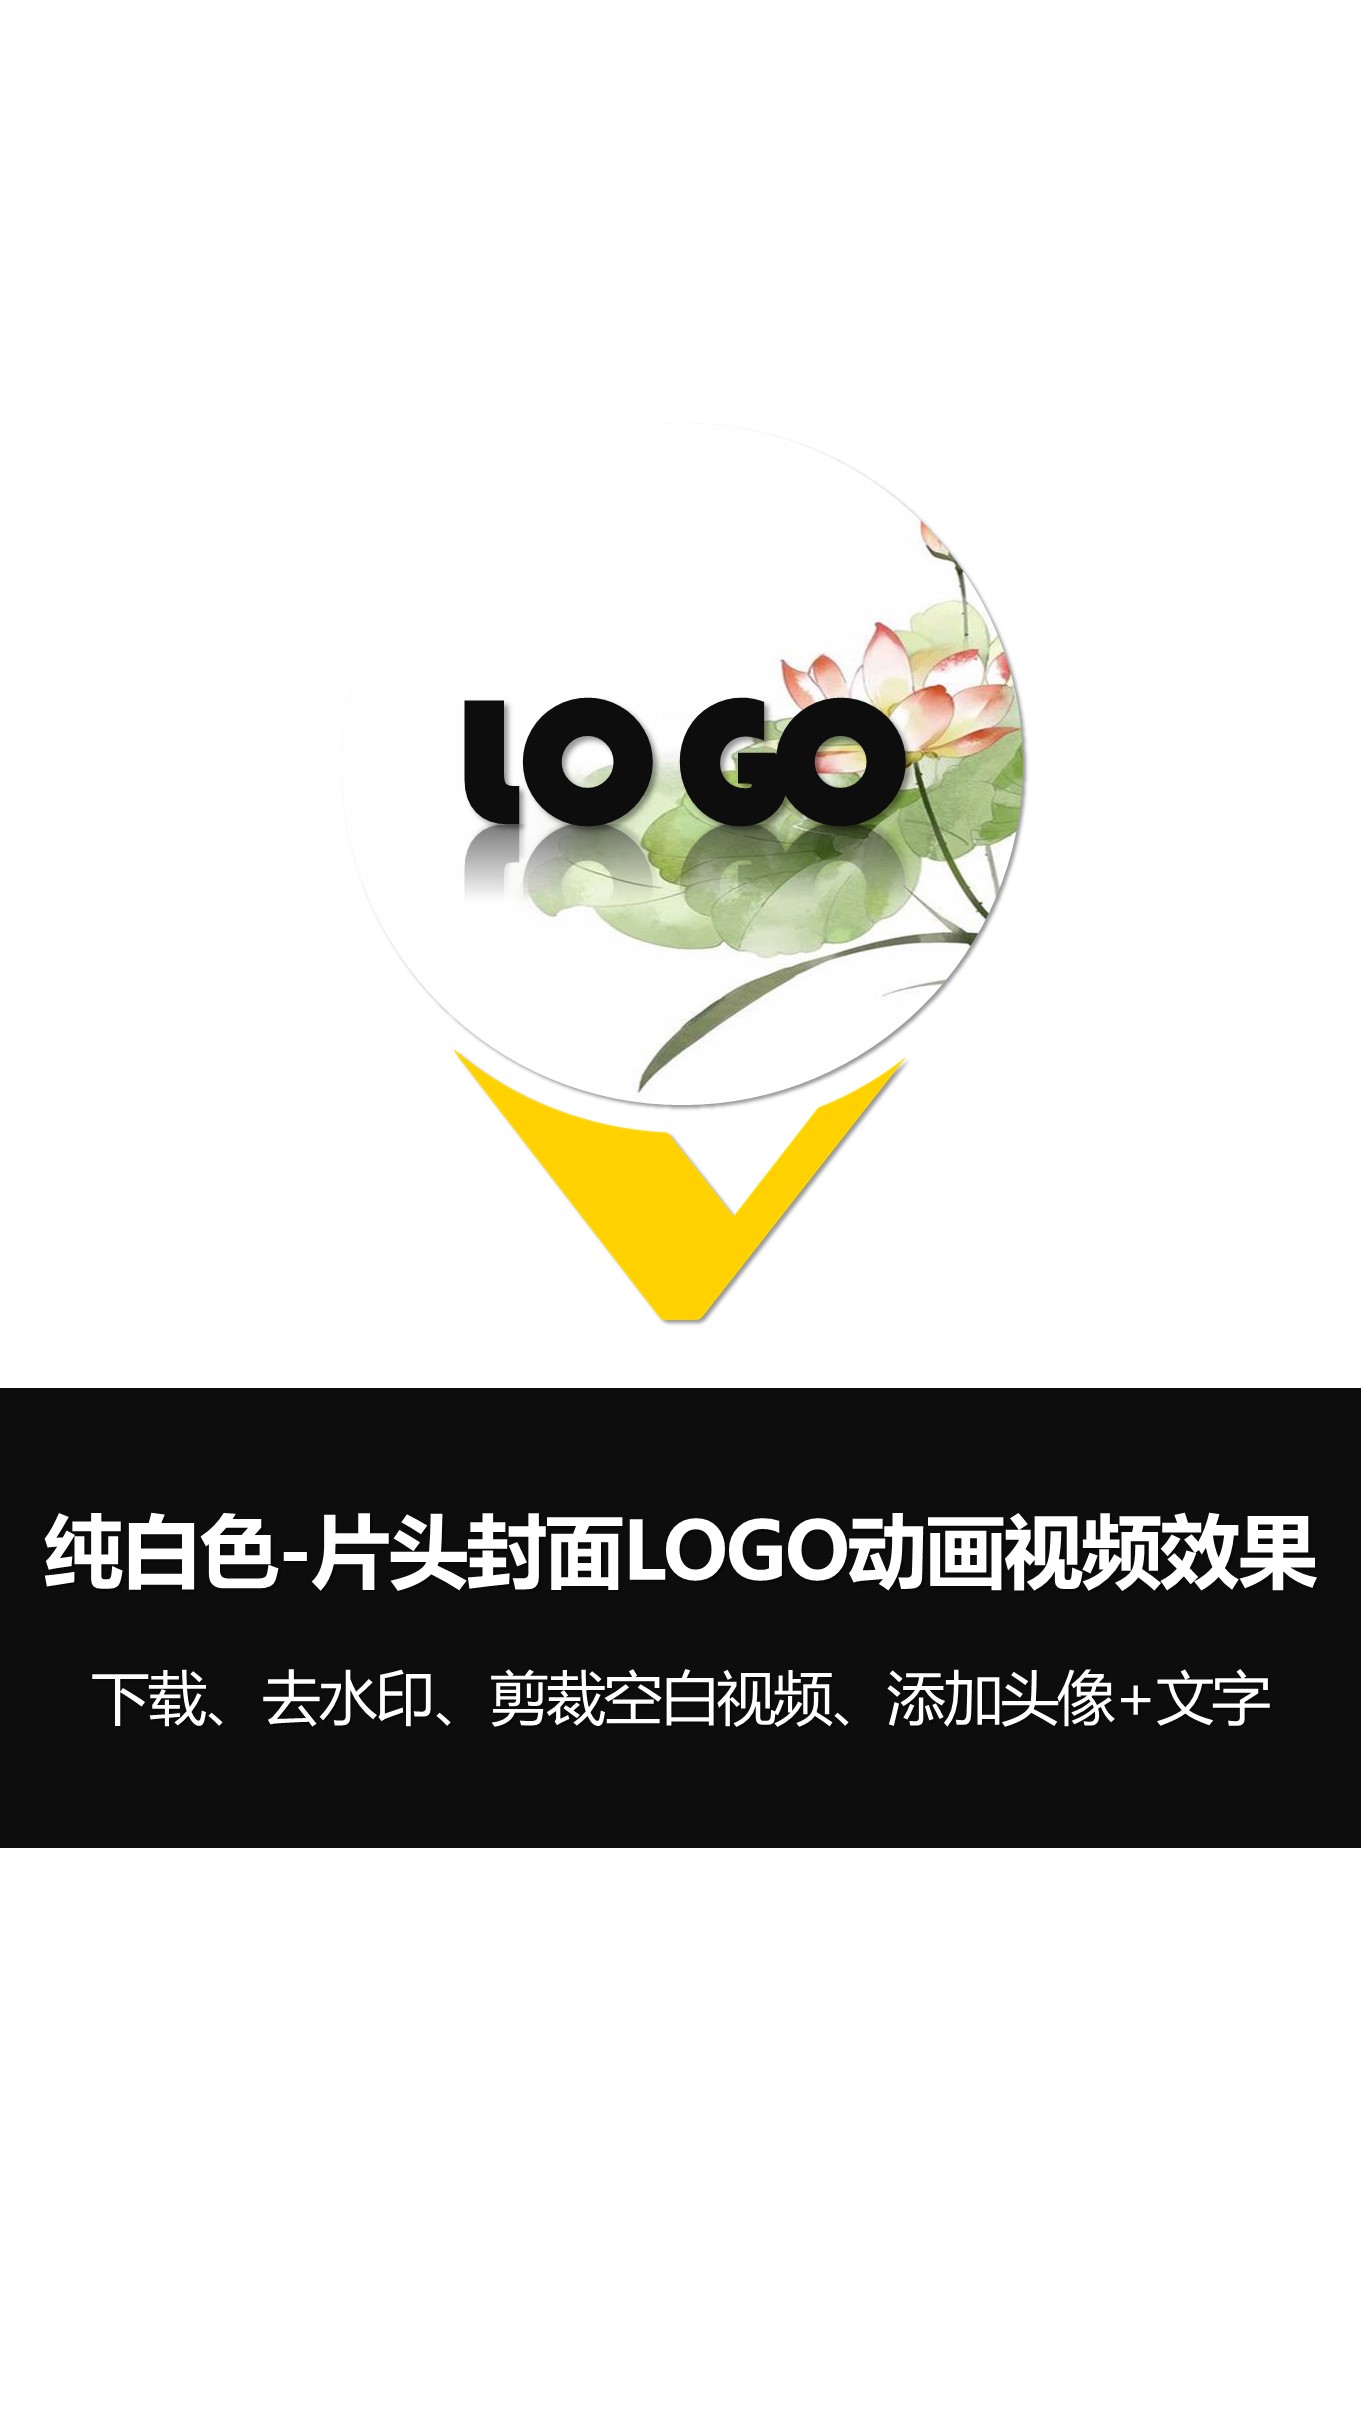 0-1纯白色片头片尾封面LOGO动画竖版 (4).JPG